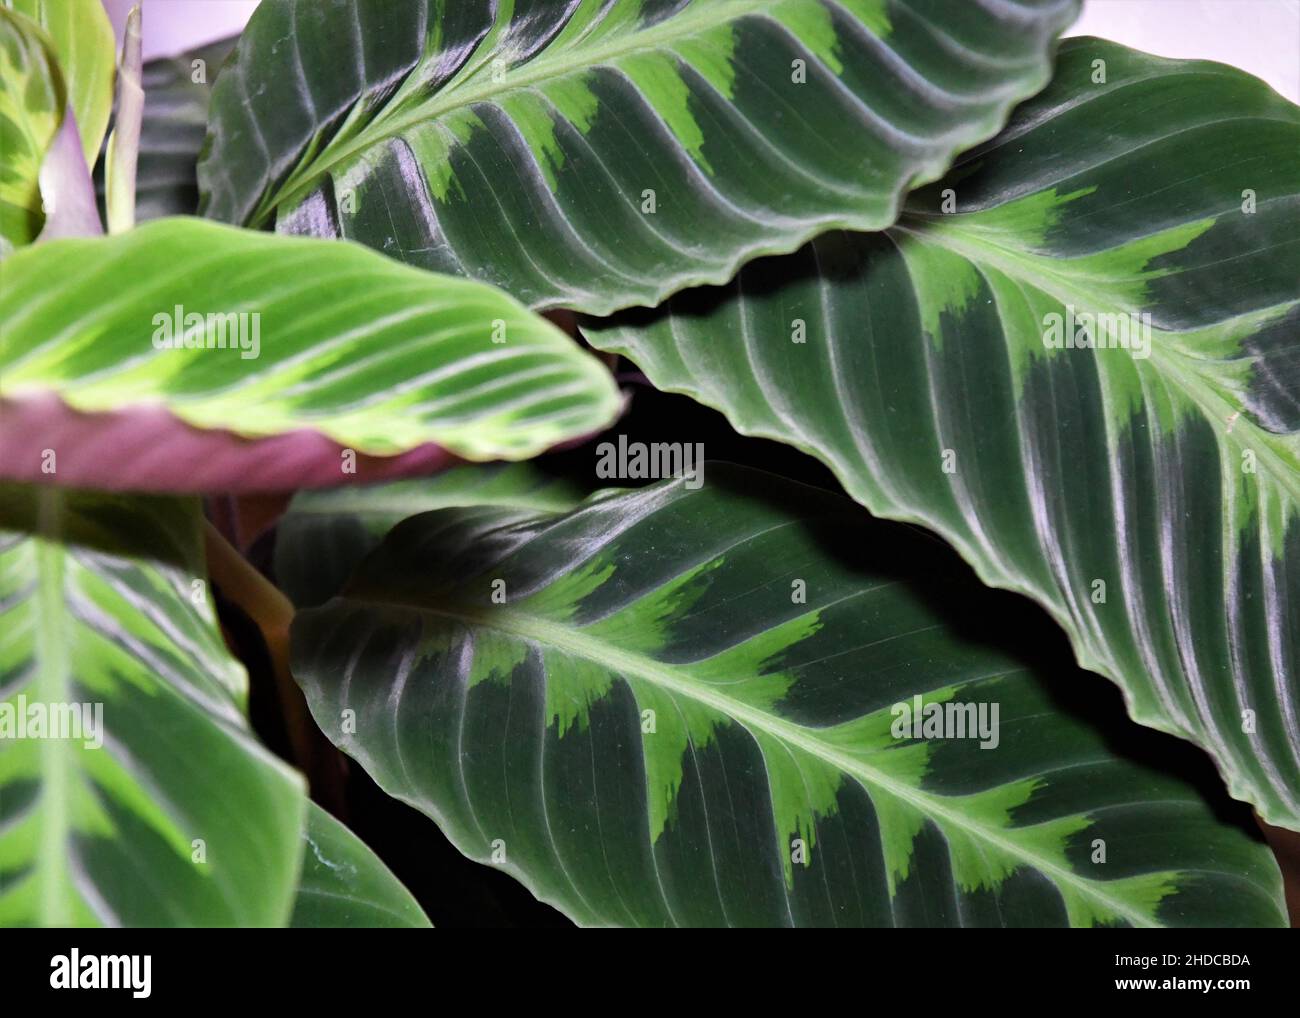 Dschungelsamt calathea (Goeppertia warscewiczii) Hauspflanze. Nahaufnahme zweifarbiger Blätter mit lila Unterseiten. Stockfoto